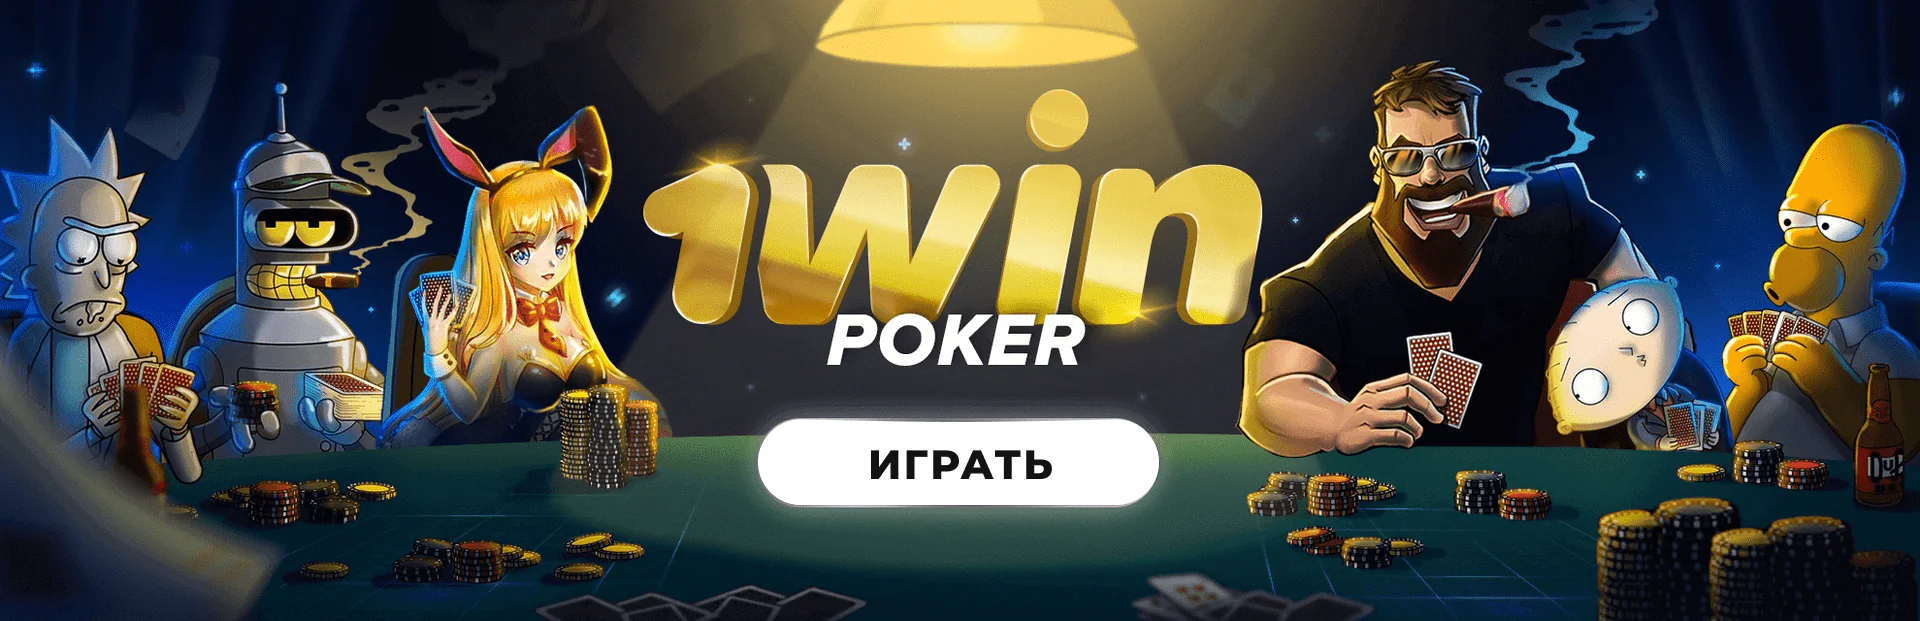 CQ9 в онлайн казино 1win 🔥 Выиграть реальные деньги в казино